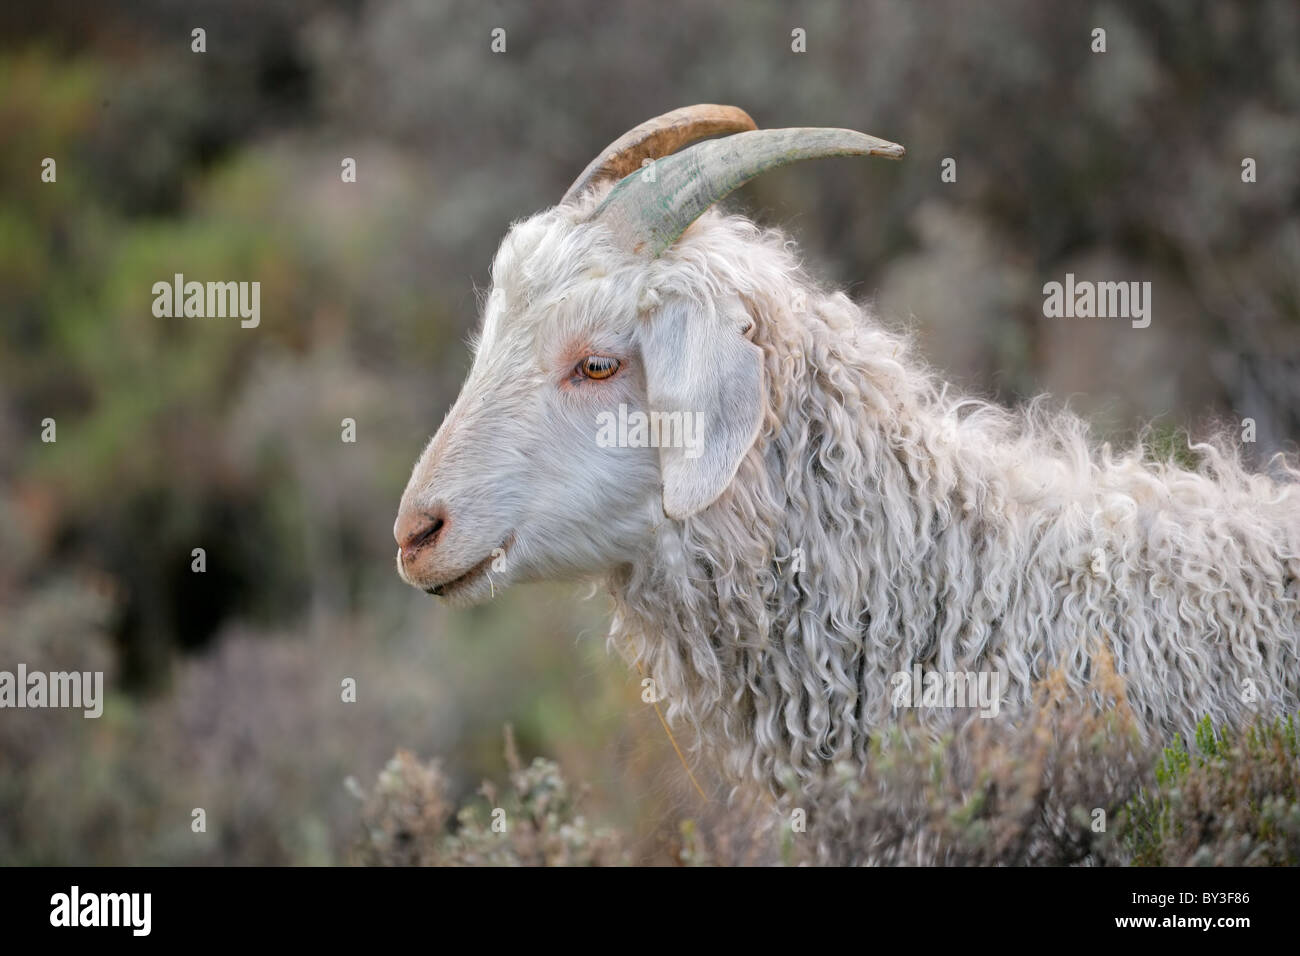 Retrato de una cabra de Angora Foto de stock